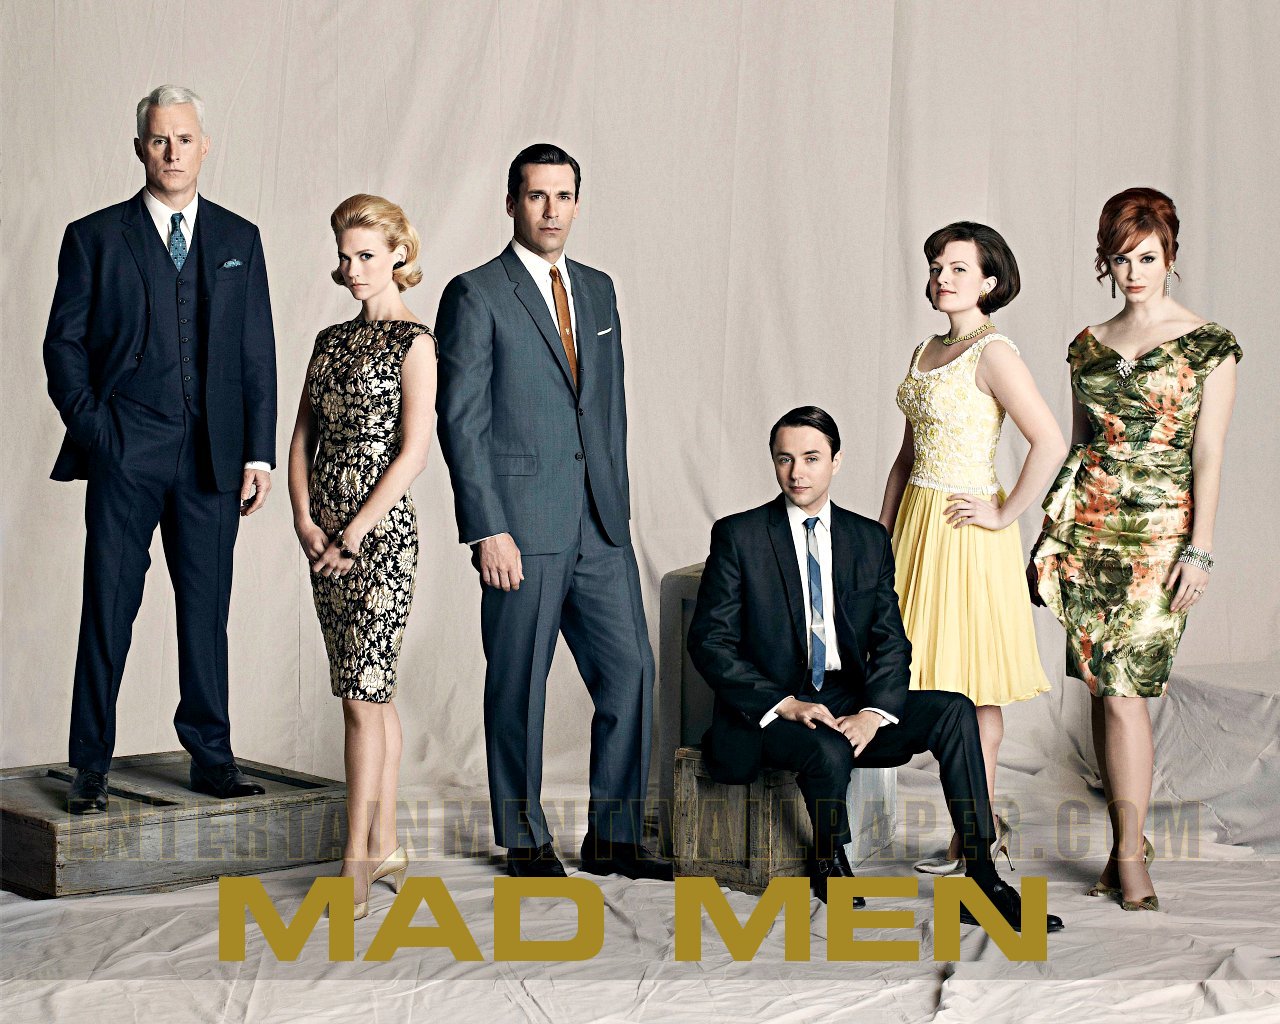 Mad Men Tv Show Costumes - HD Wallpaper 